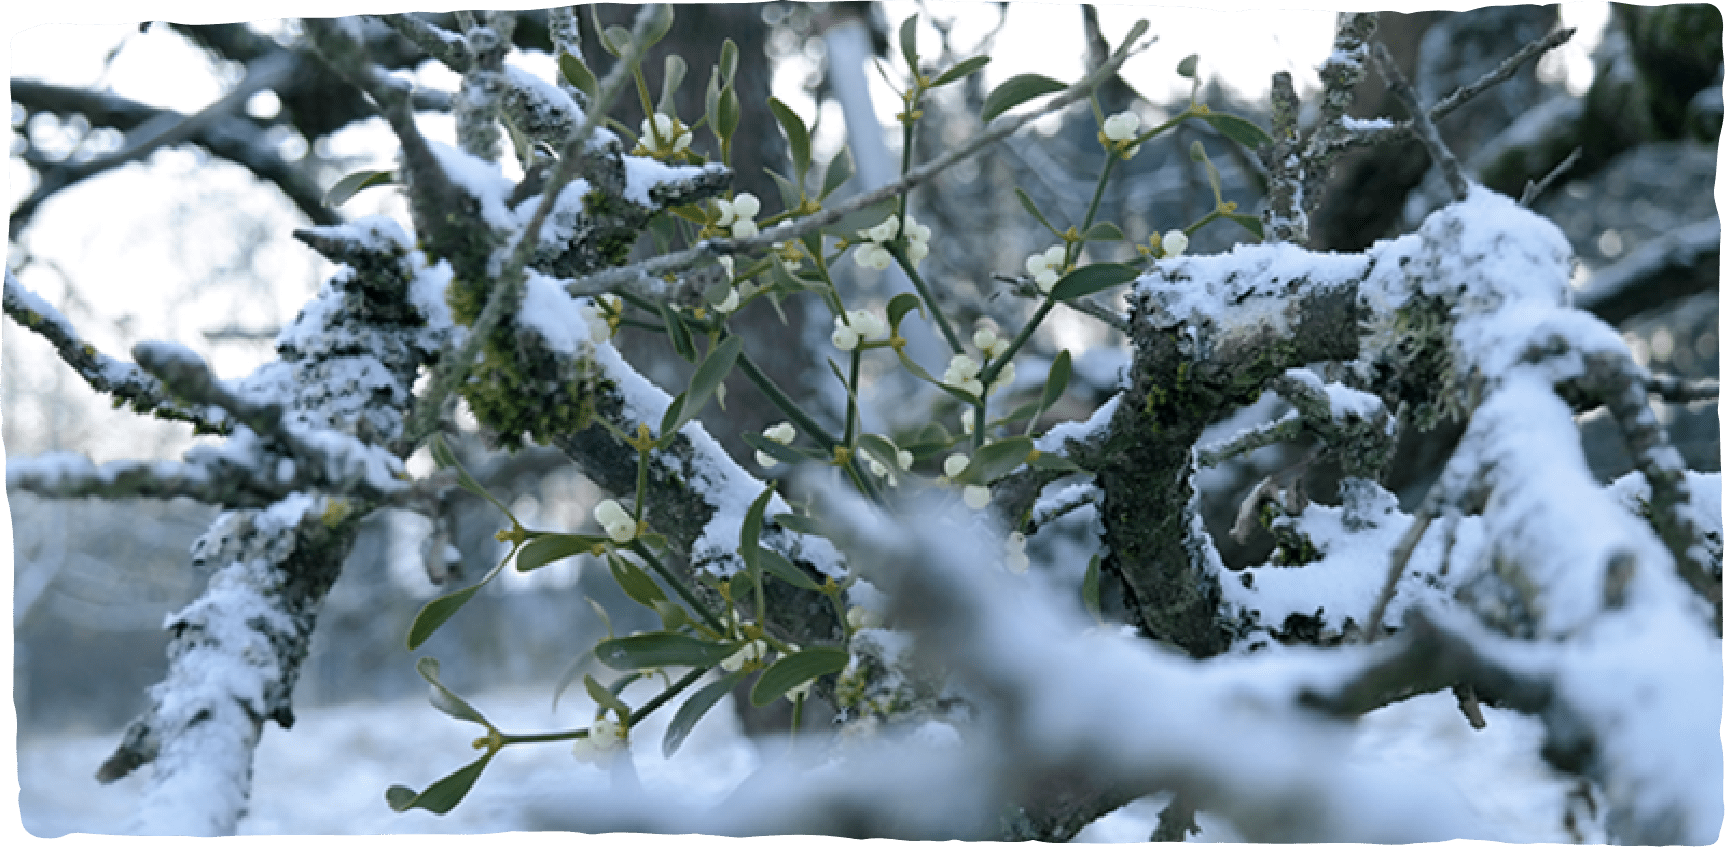 Mistelzweige in einem verzweigten Baum im Winter